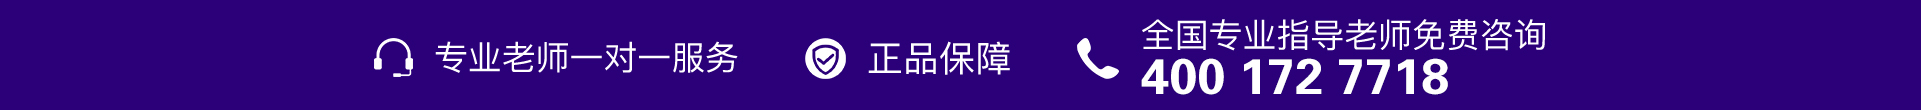 紫色电话-banner图下方-PC - 副本.jpg